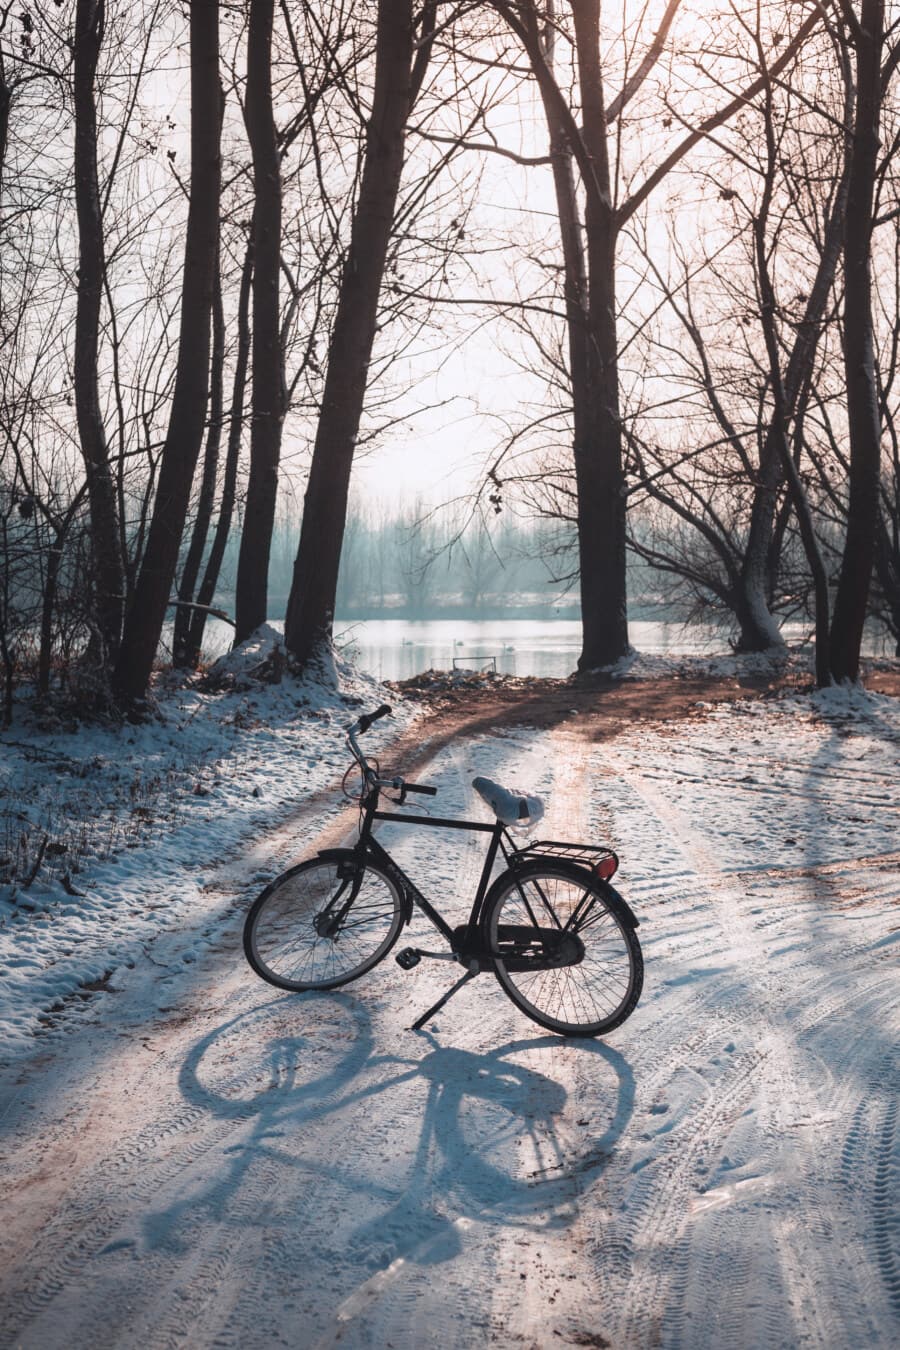 森林路, 冬天, 路, 自行车, 雪, 林路径, 阴影, 背光, 树, 车辆